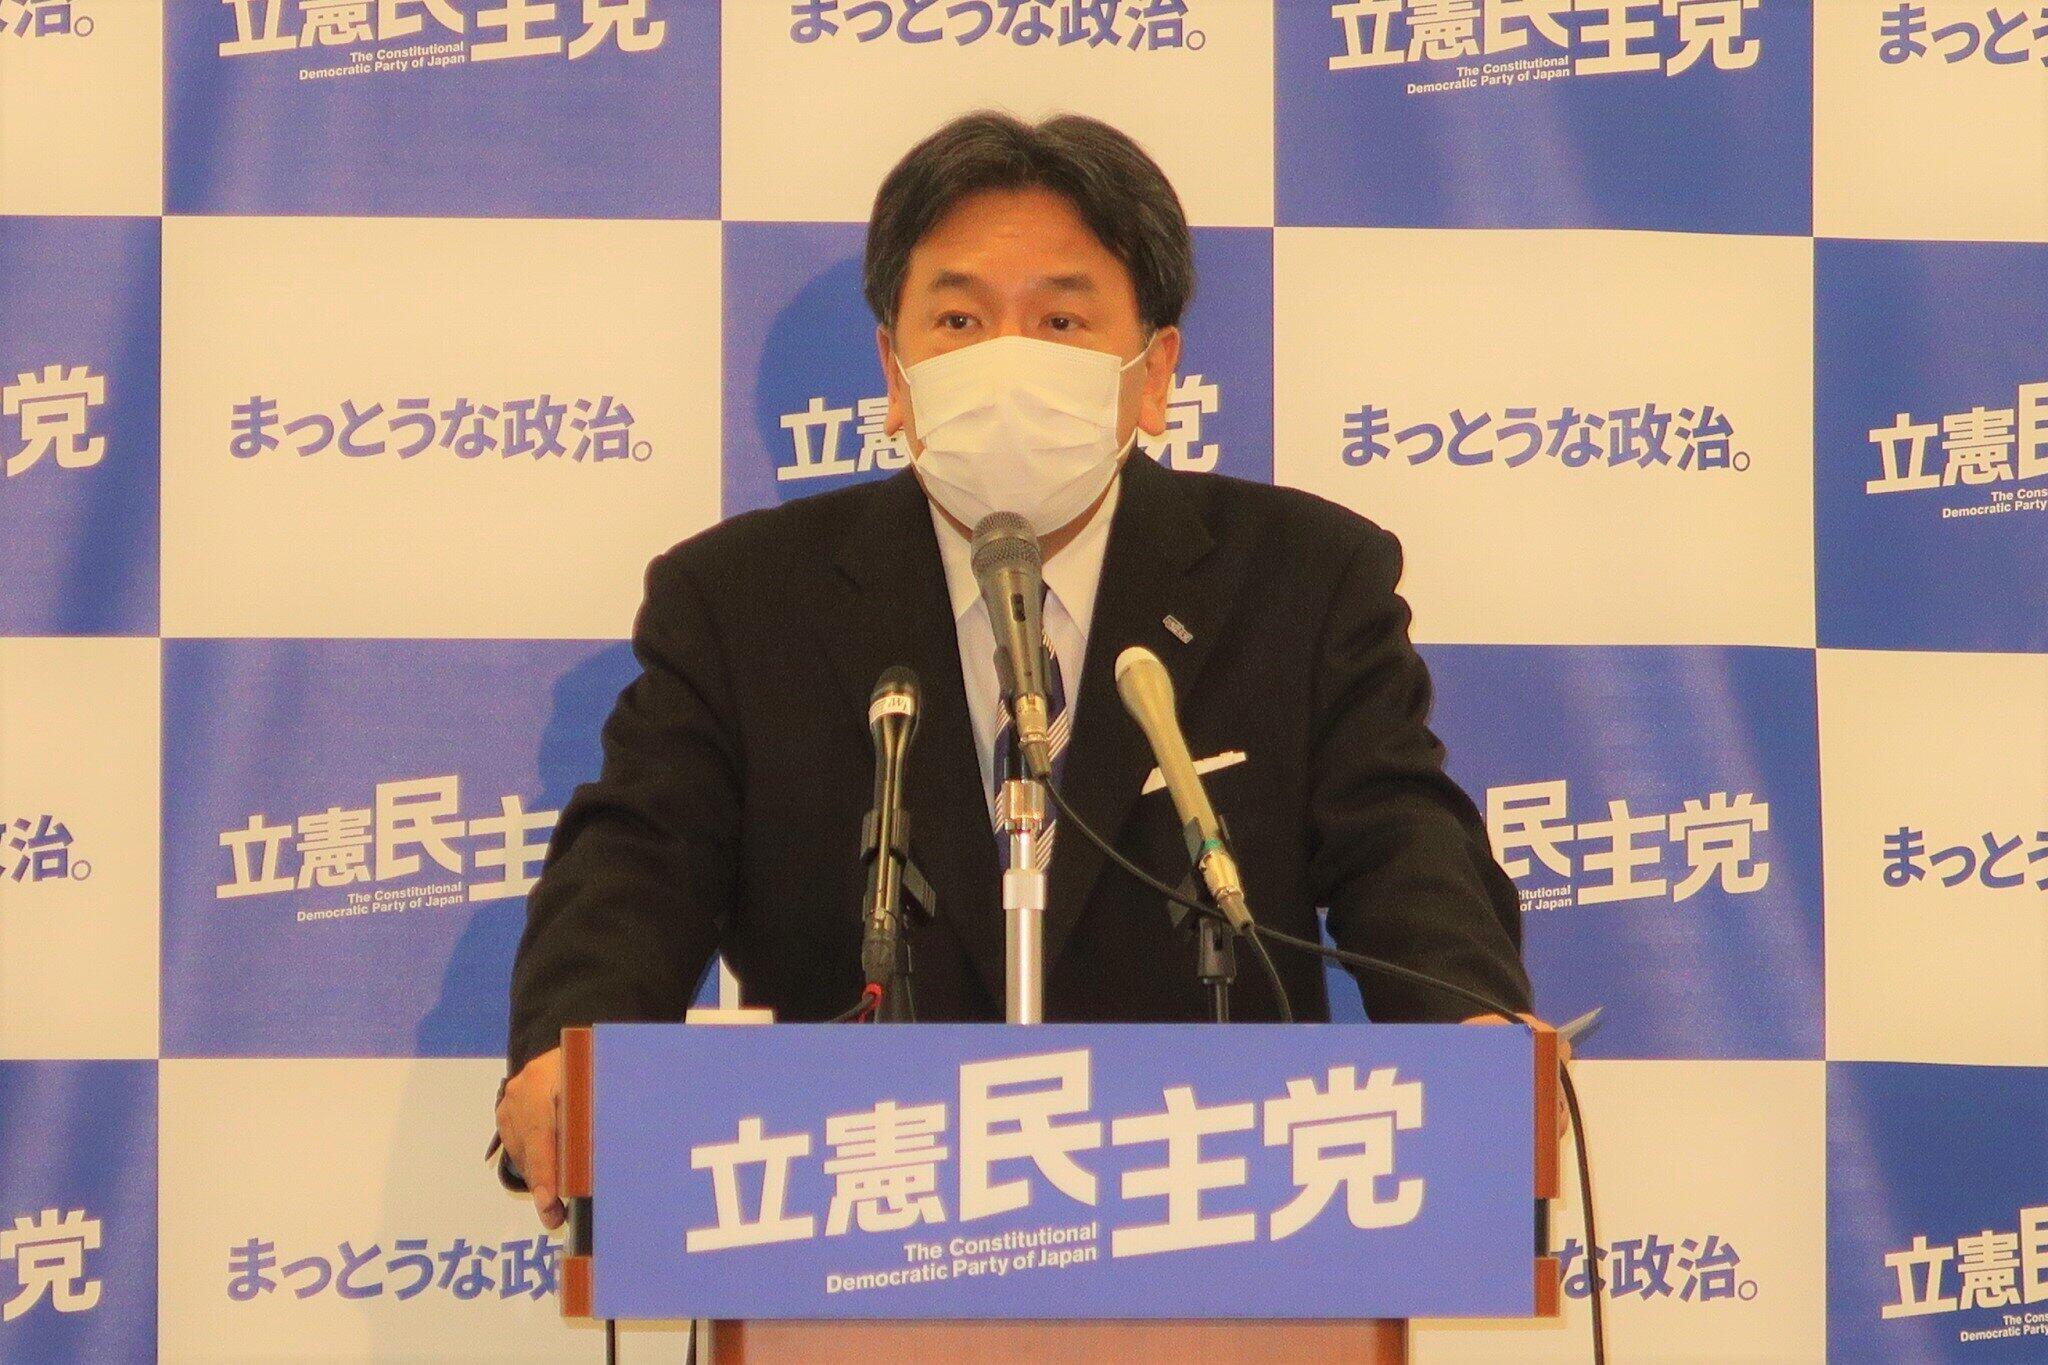 立憲民主党の枝野幸男代表。5月8日の記者会見では、法案を「束ねる」ことの問題を指摘するにとどめていた